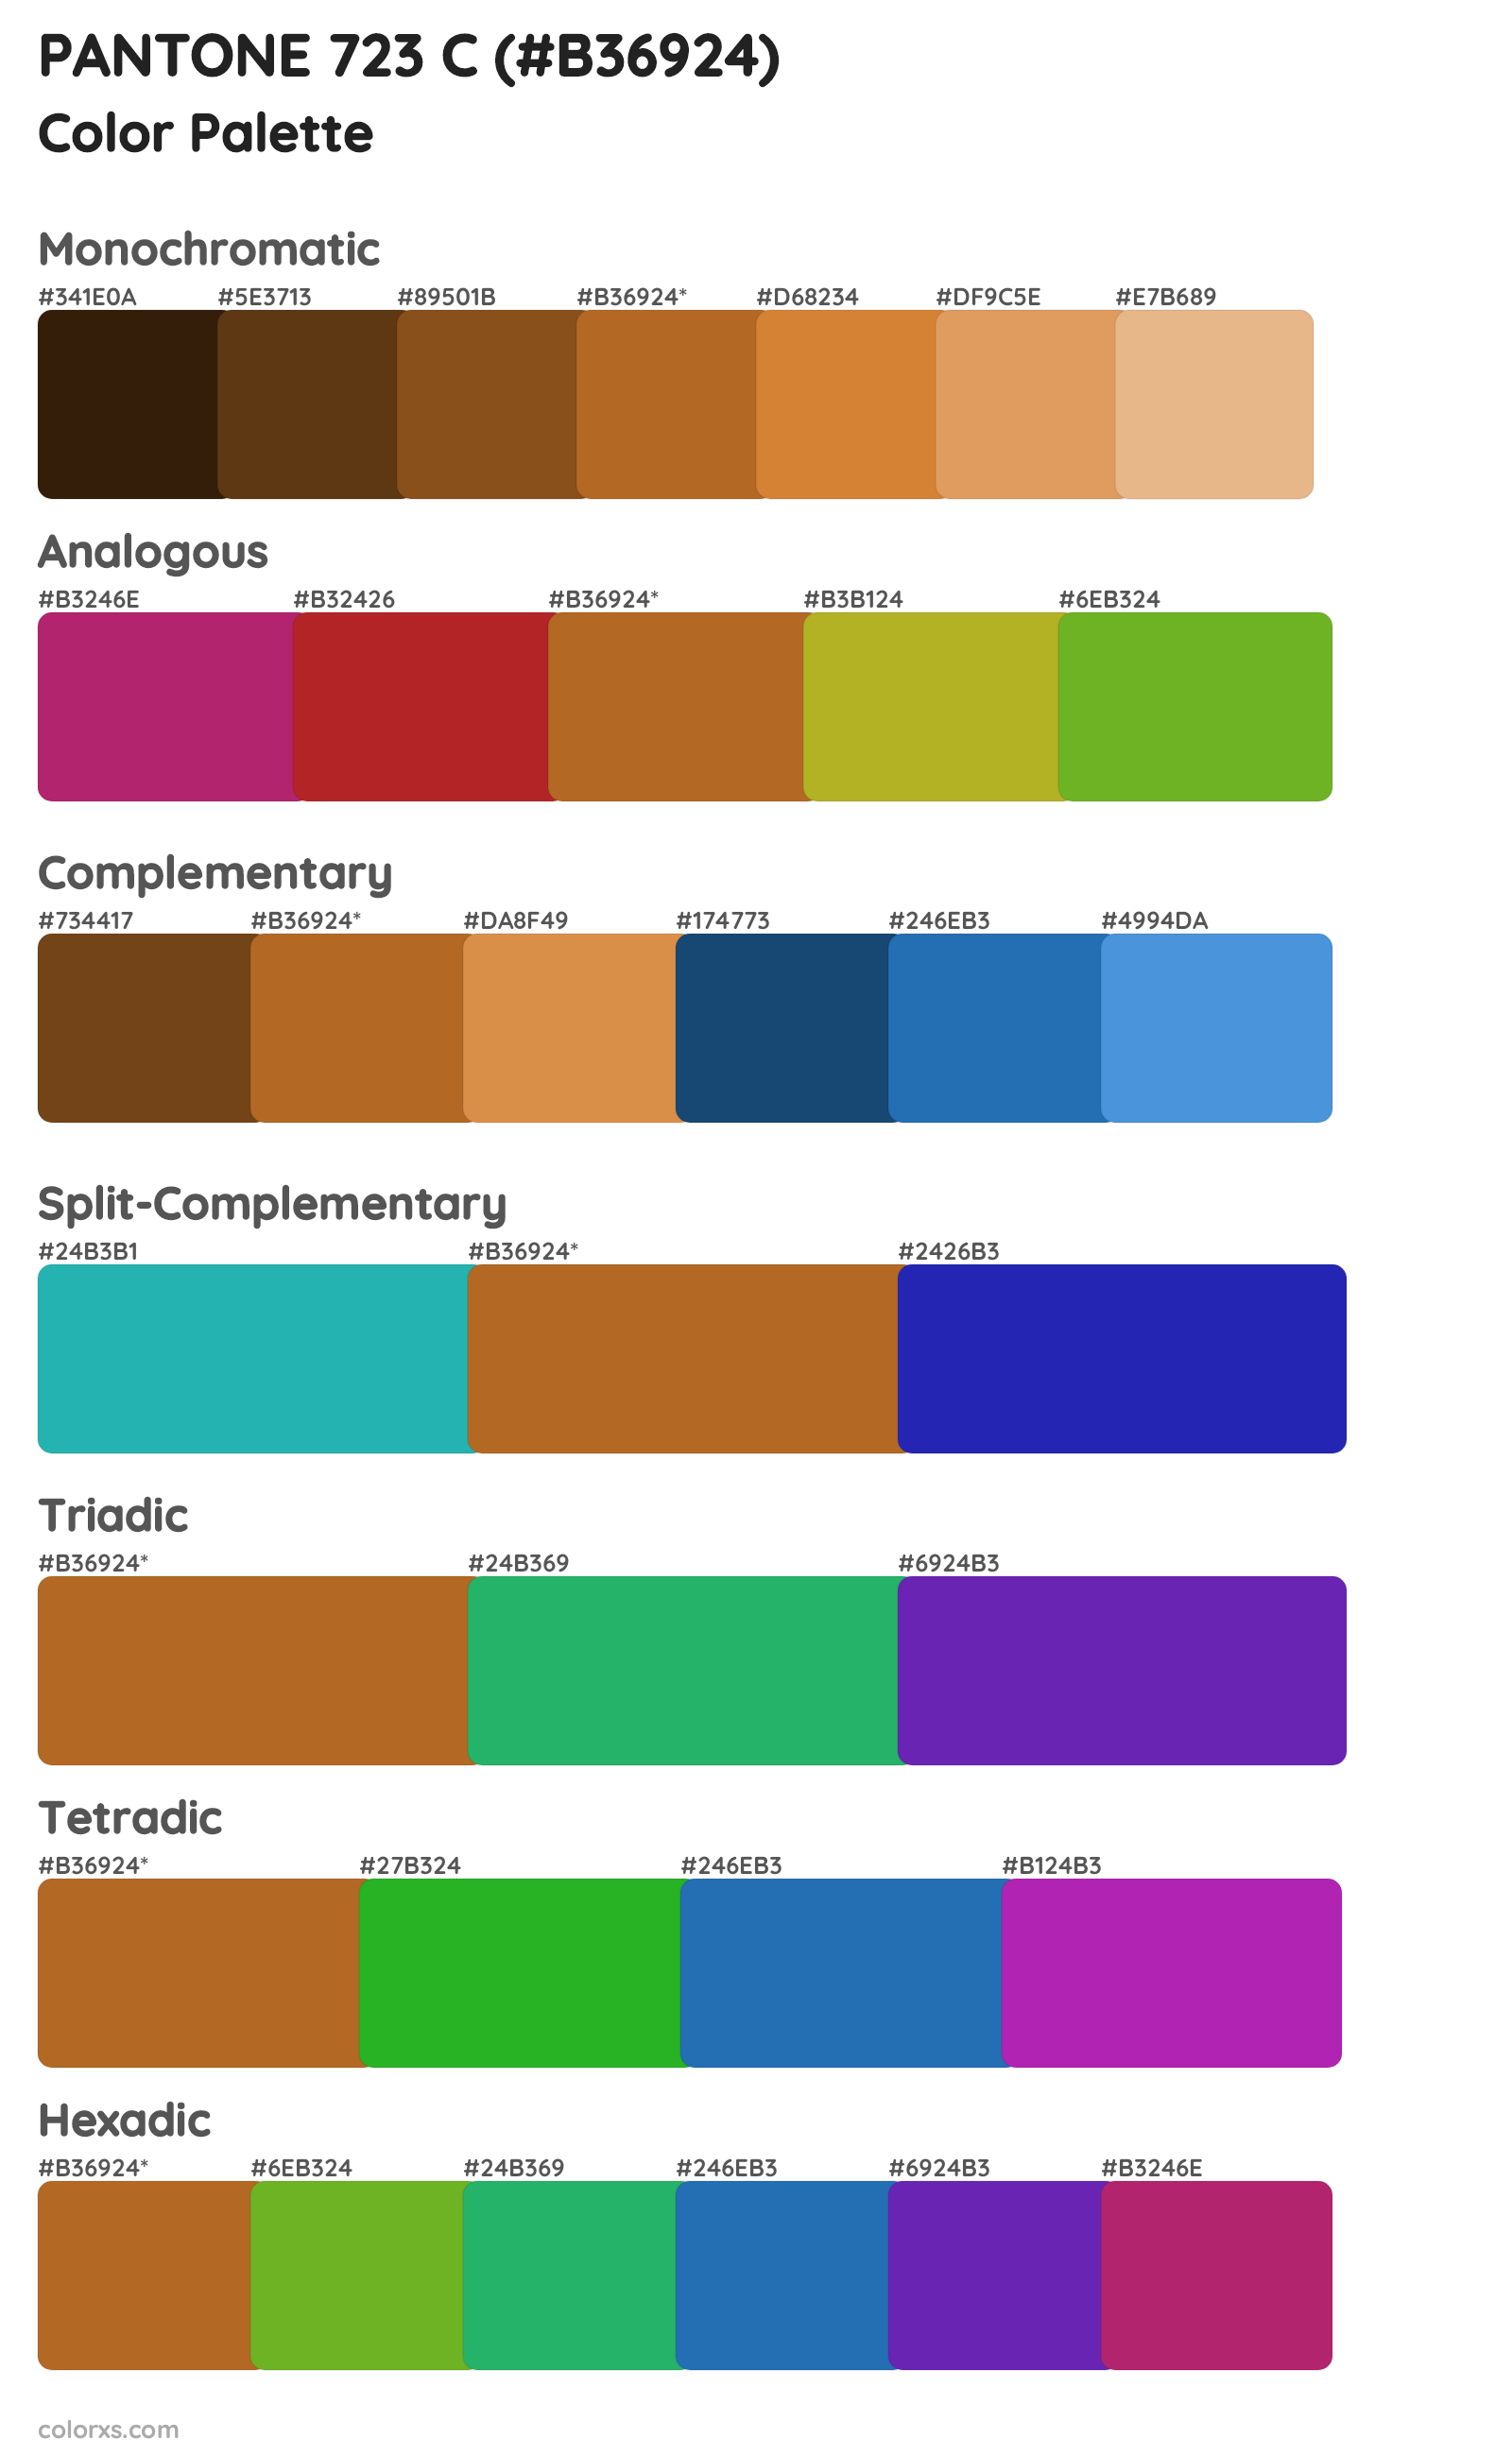 PANTONE 723 C Color Scheme Palettes